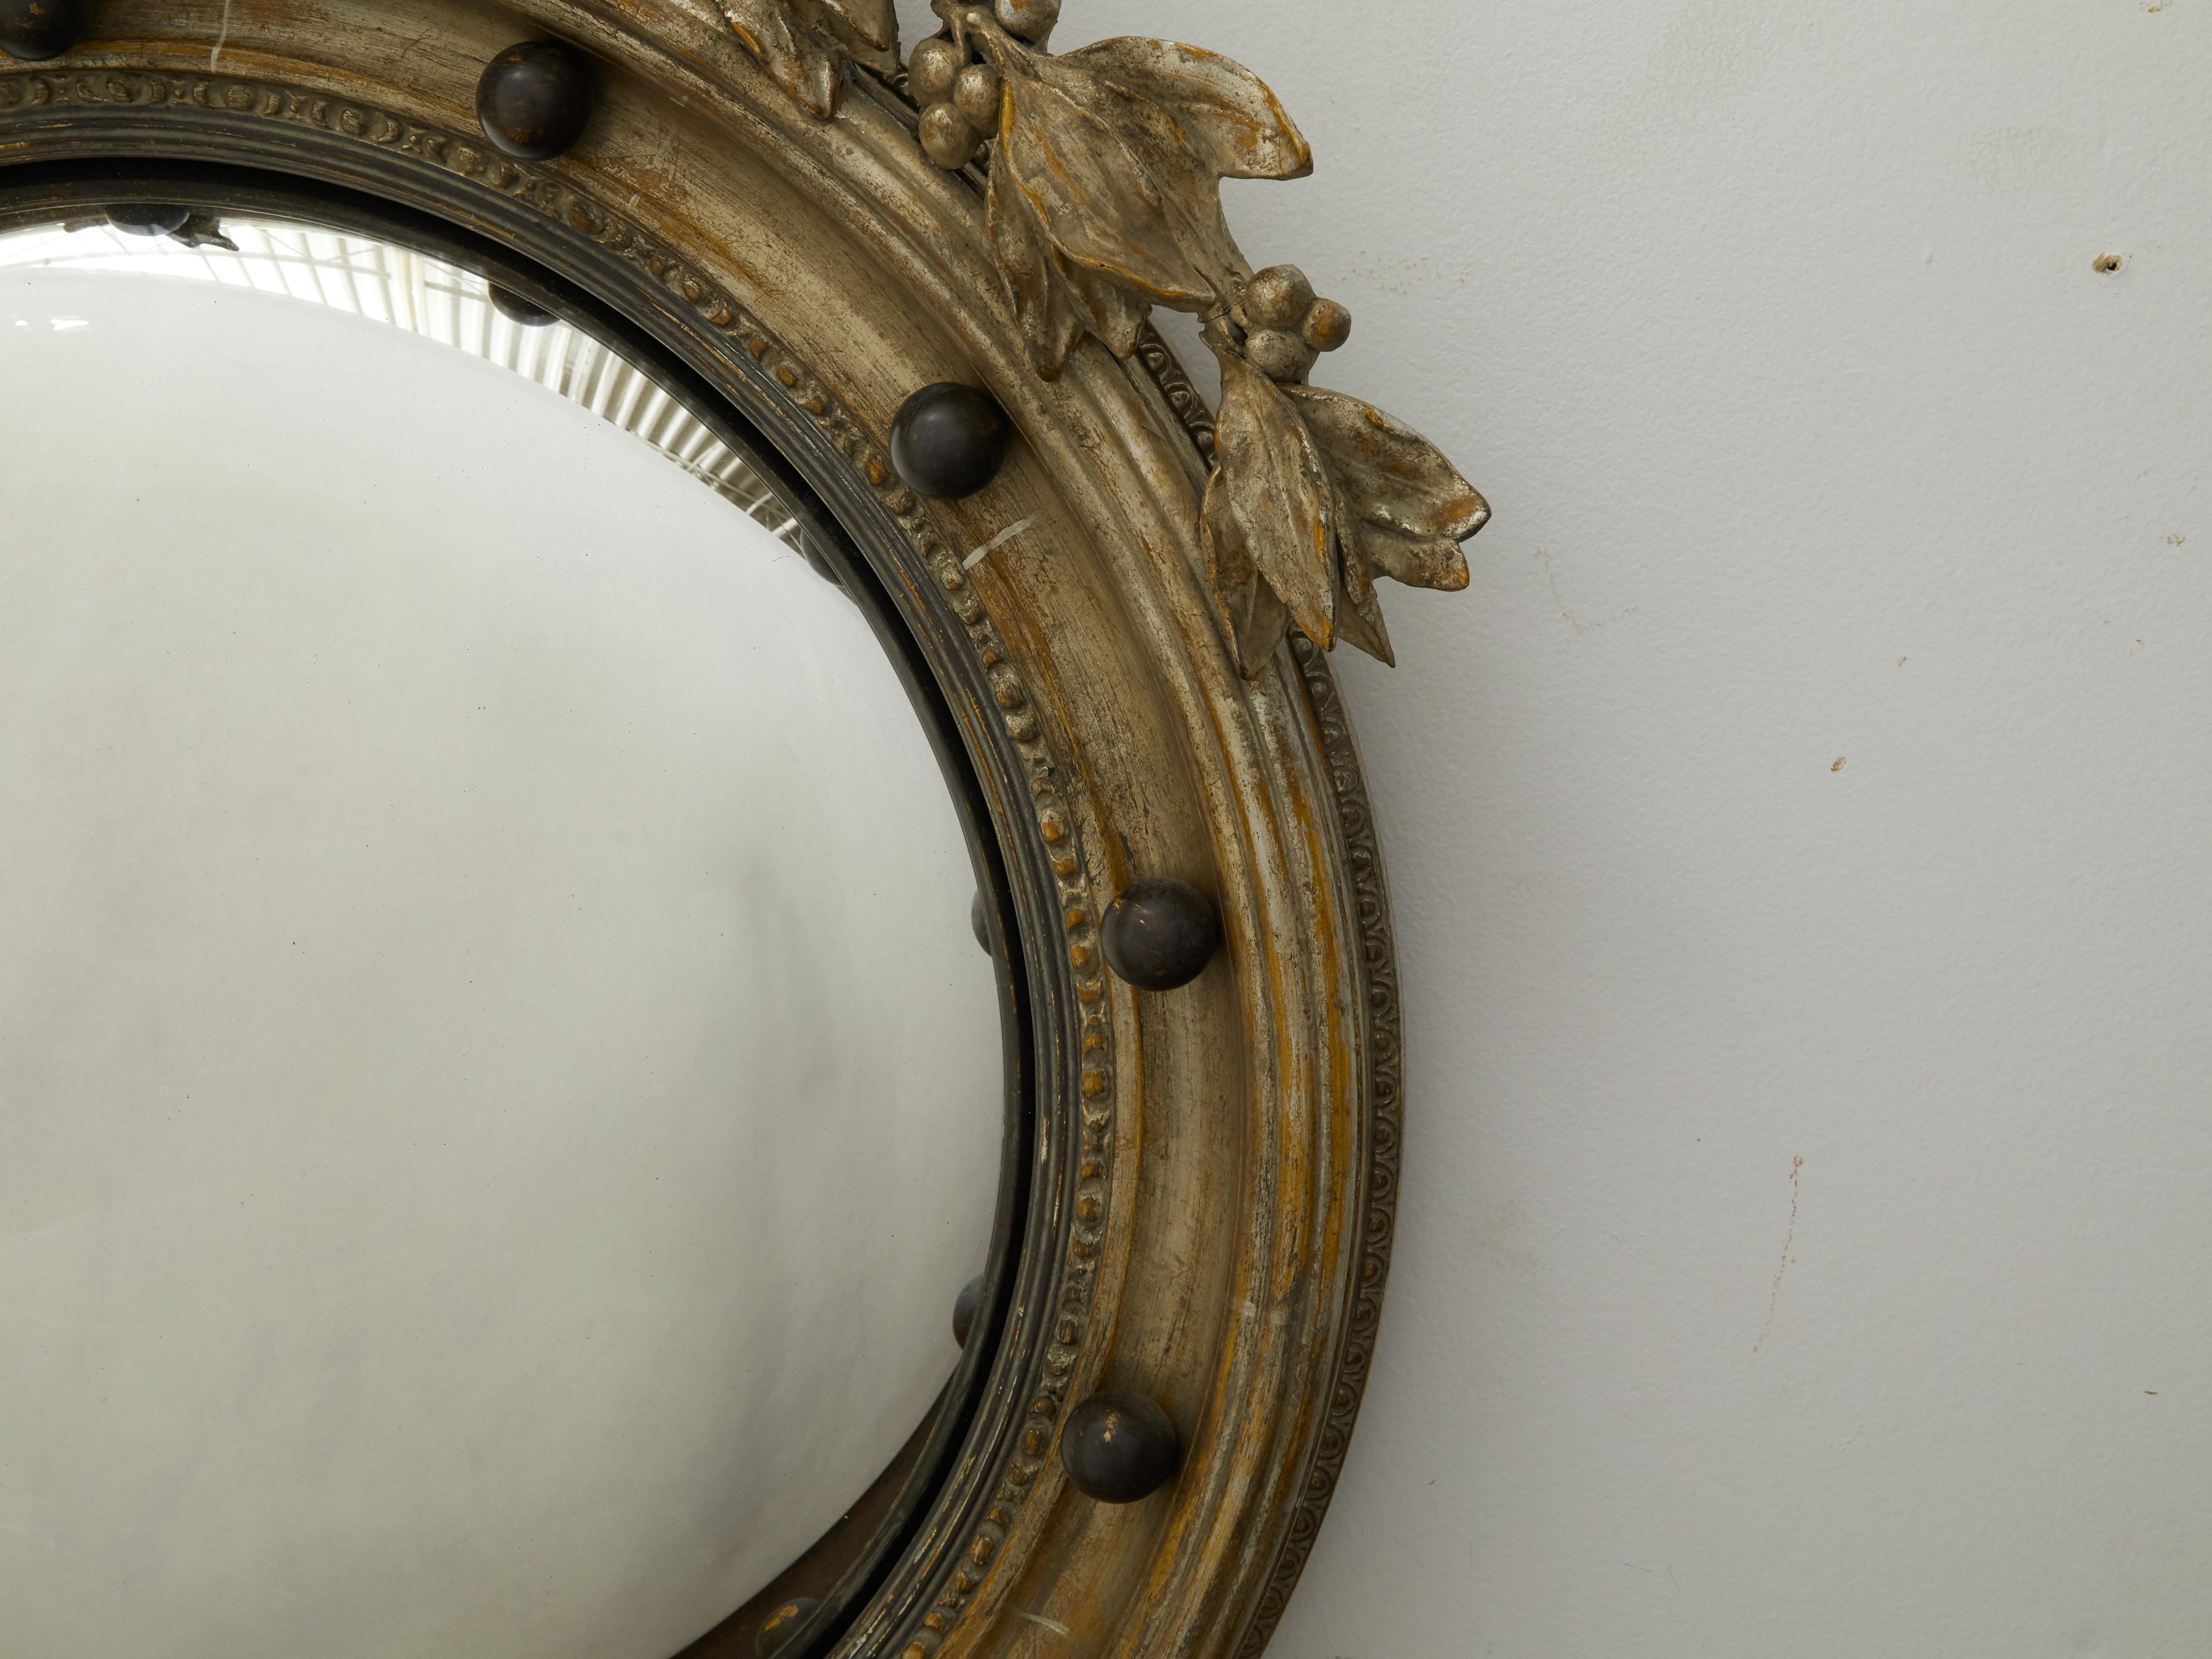 antique eagle mirror